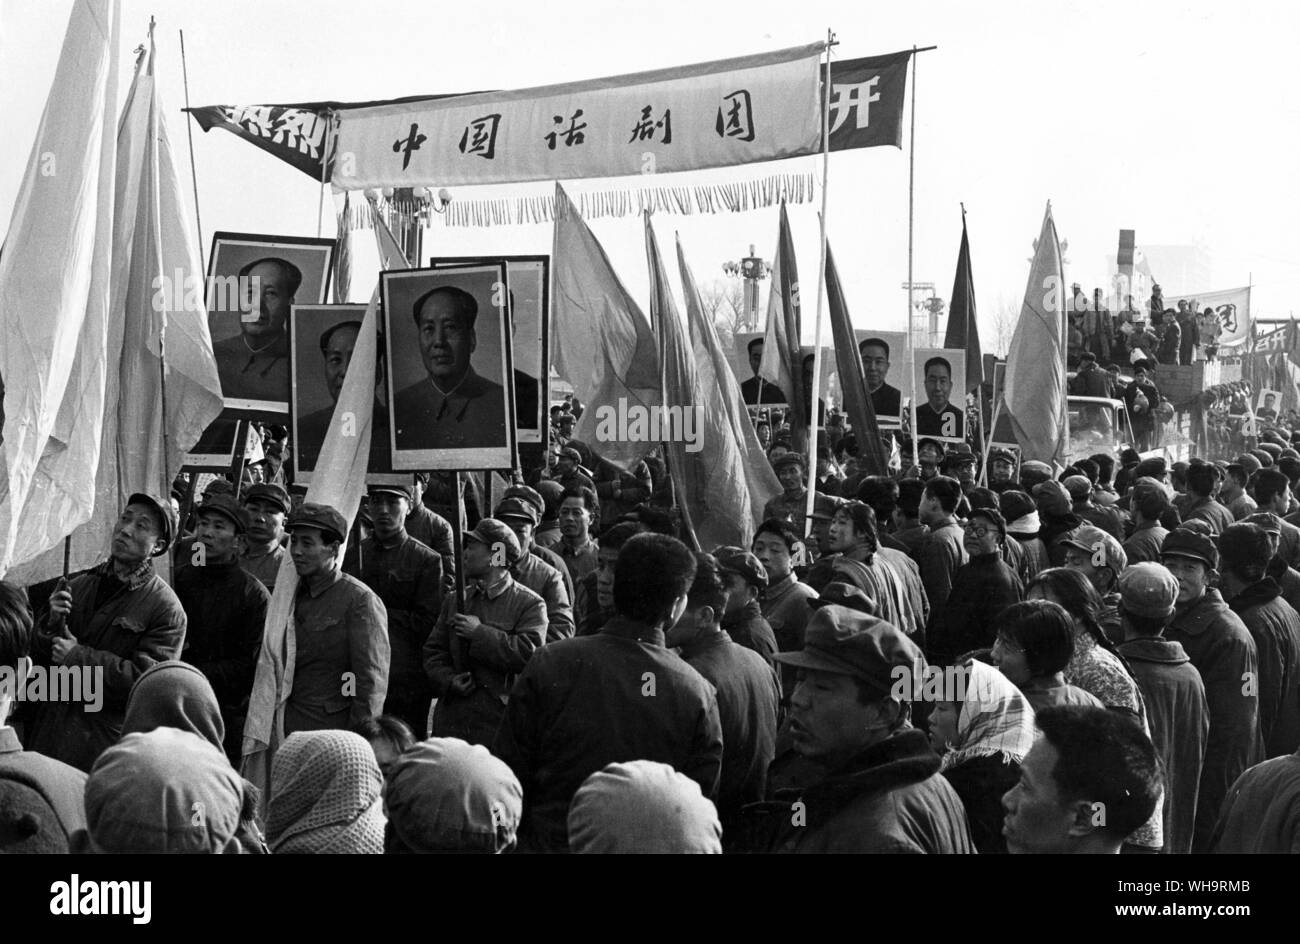 6 mars 1978 : la Chine, Pékin. Portraits de le Président nouvellement élu, Hua Kuo-feng et Mao Tse-Tung, lors d'une parade festive en l'honneur de la clôture du 5e Congrès du Parti National du Peuple. Tien An Men. Banque D'Images